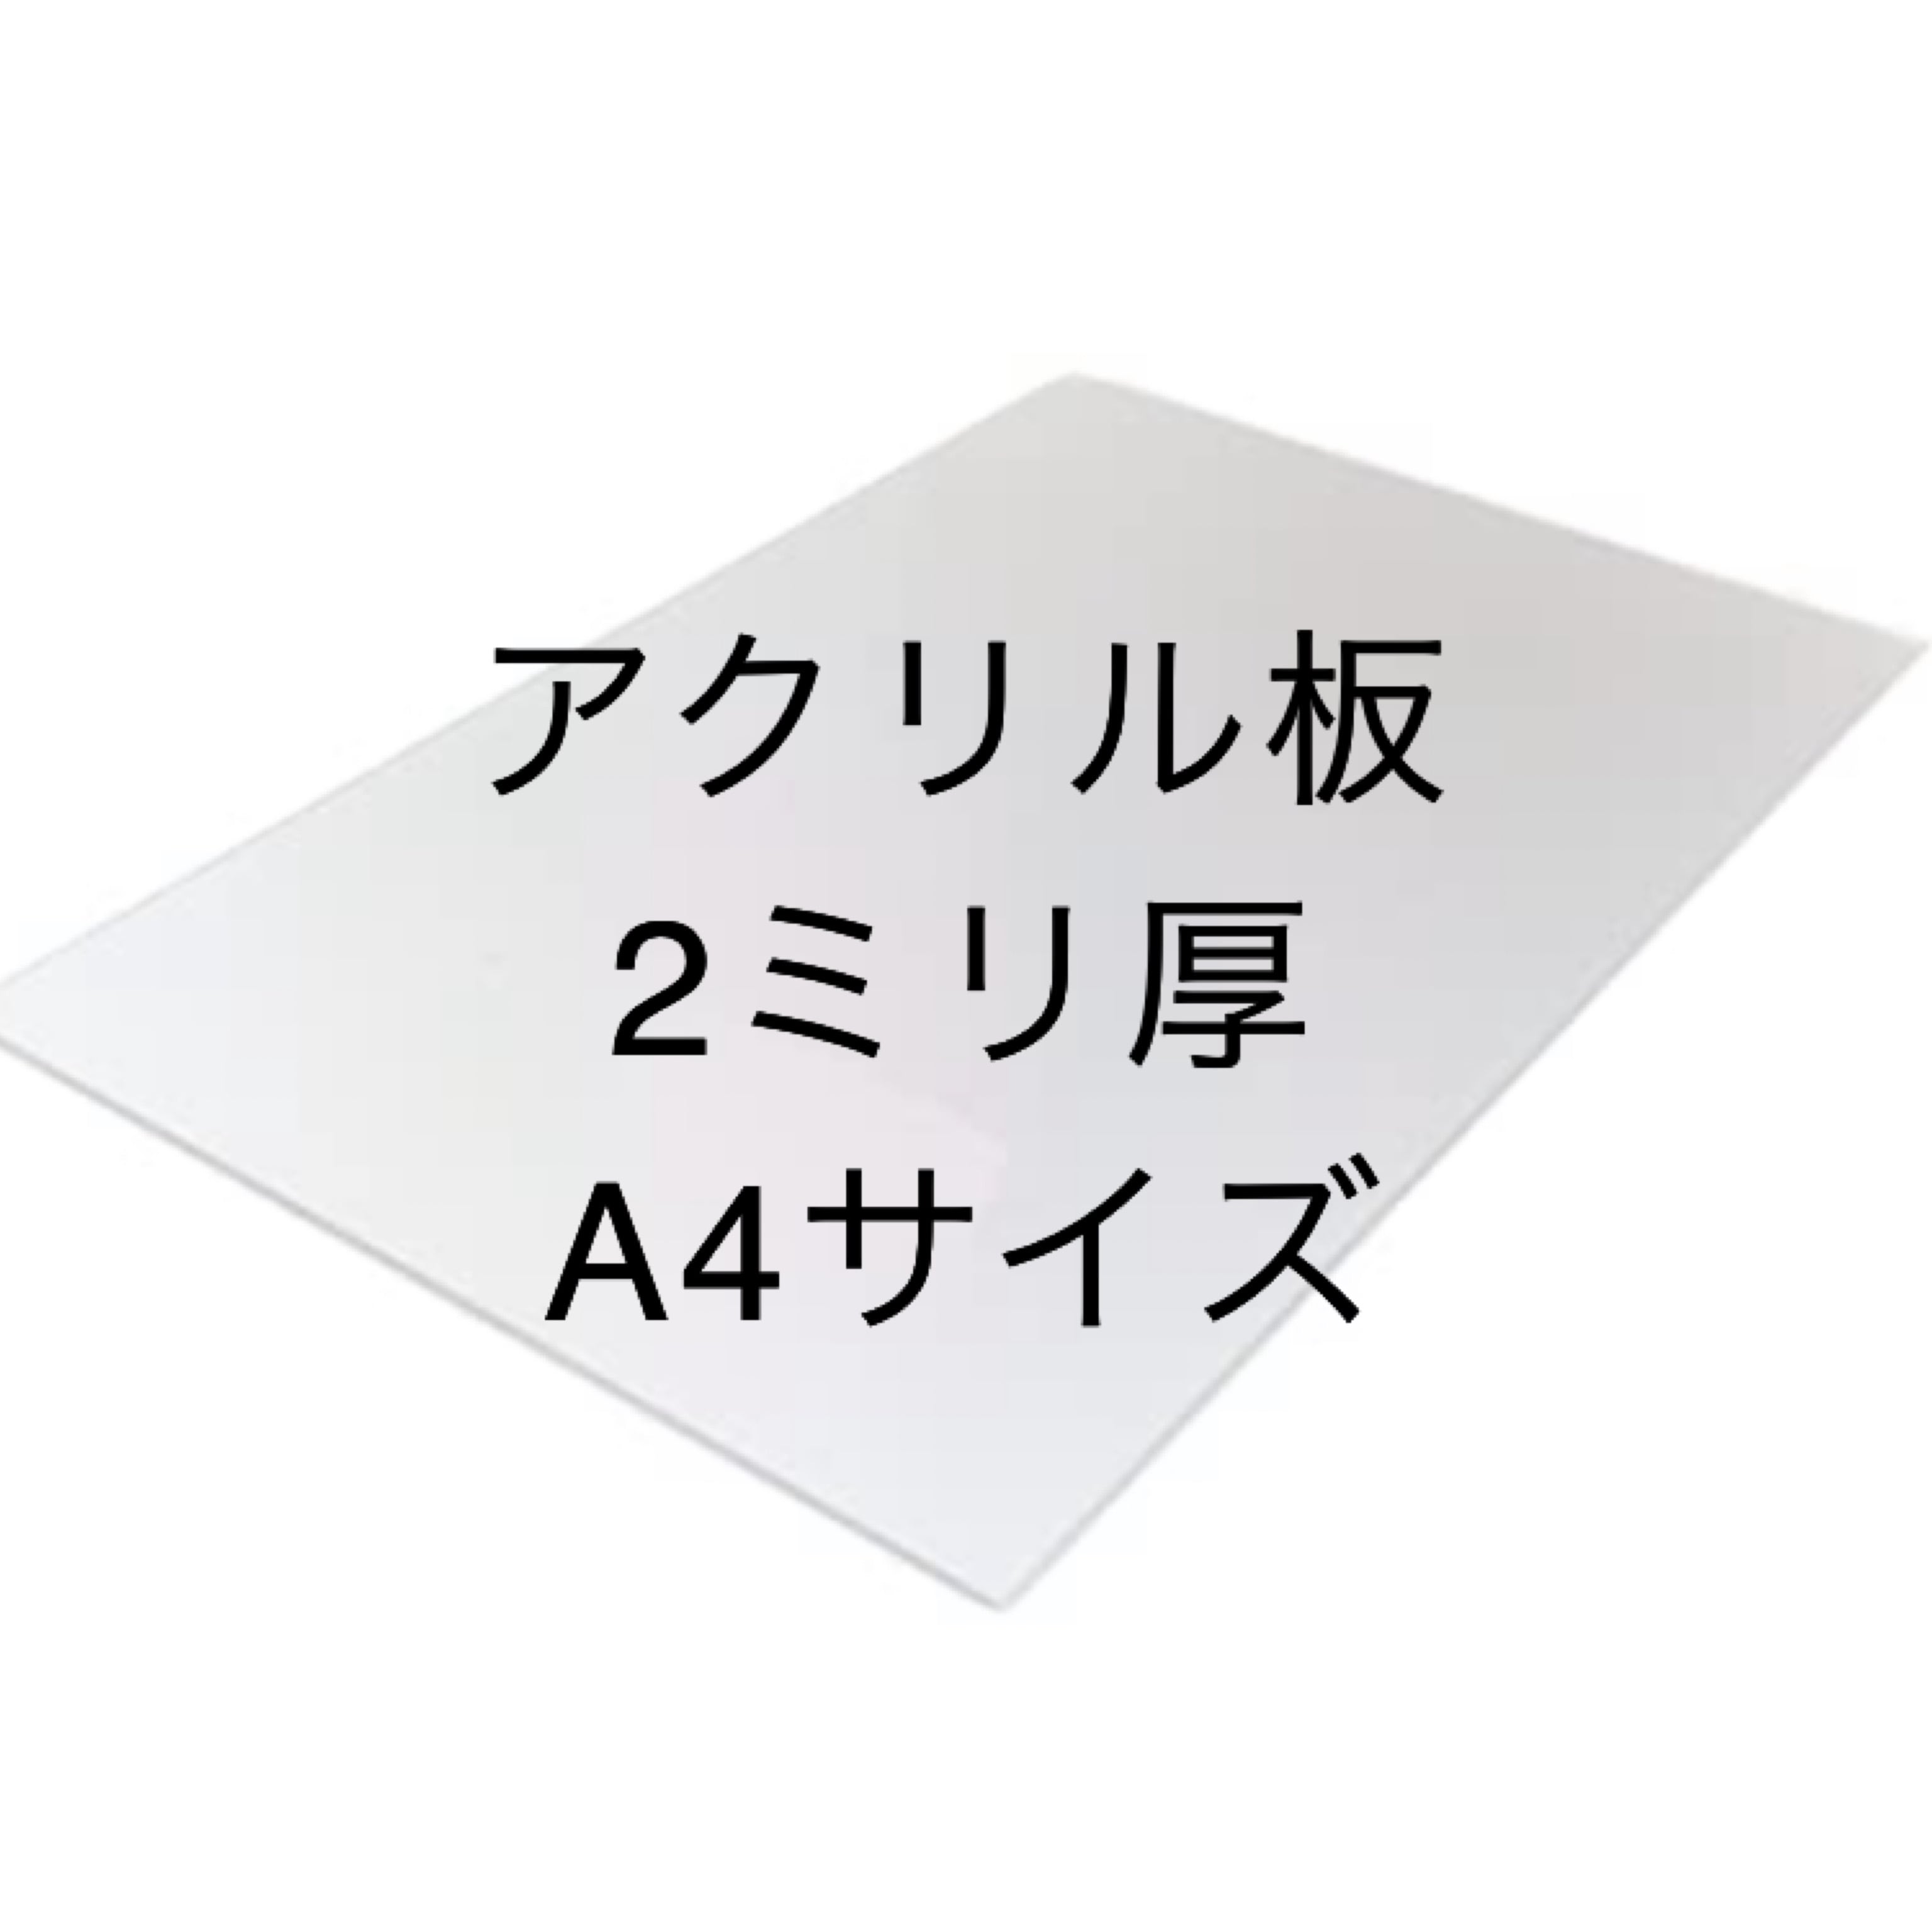 日本製 アクリル板 ブルースモーク(キャスト板) 厚み10mm 700X1200mm 縮小カット1枚無料 糸面取り仕上(エッジで手を切る事はなし) - 3